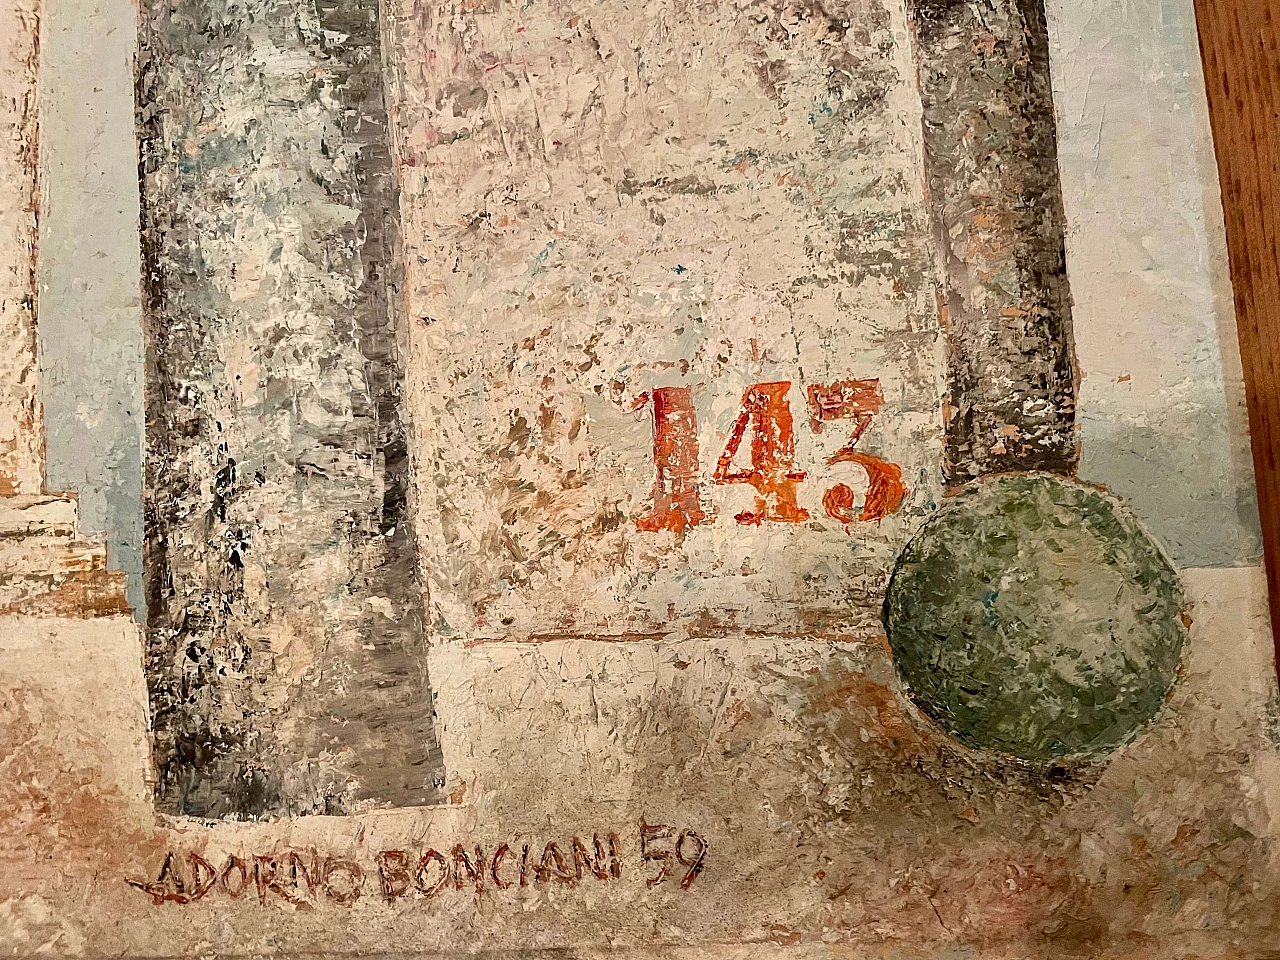 Oil painting on cardboard by Adorno Bonciani, Cocomeraia in Santo Spirito, 1959 1386557